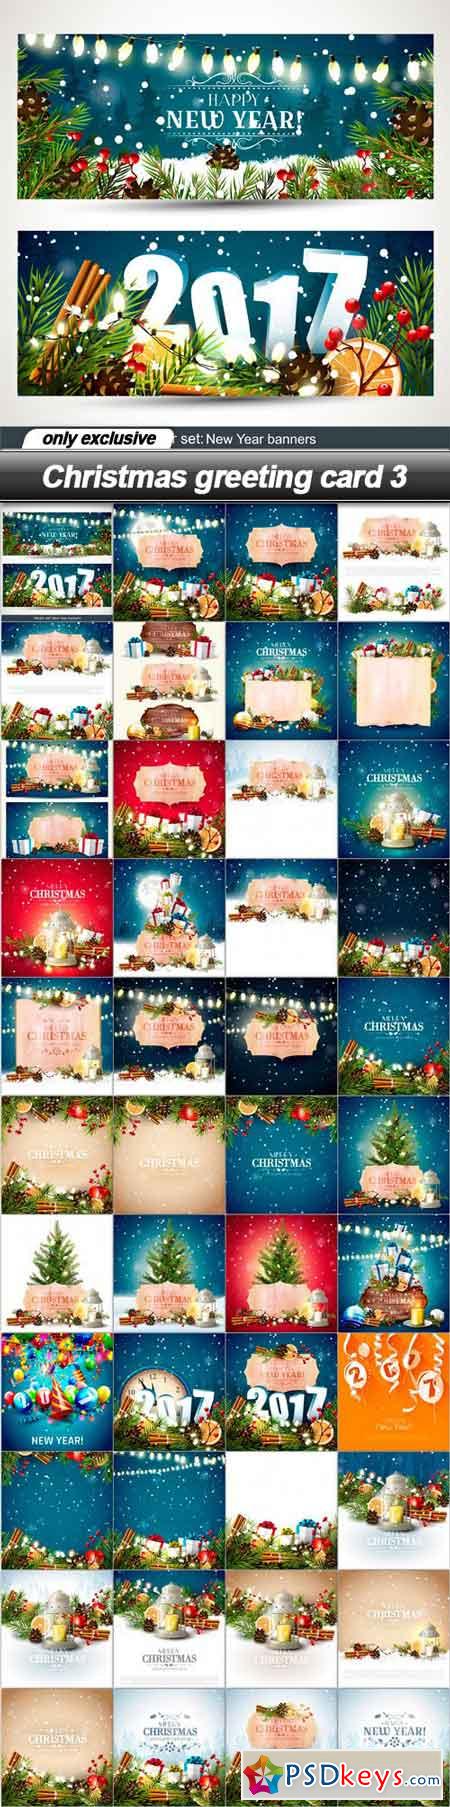 Christmas greeting card 3 - 44 EPS